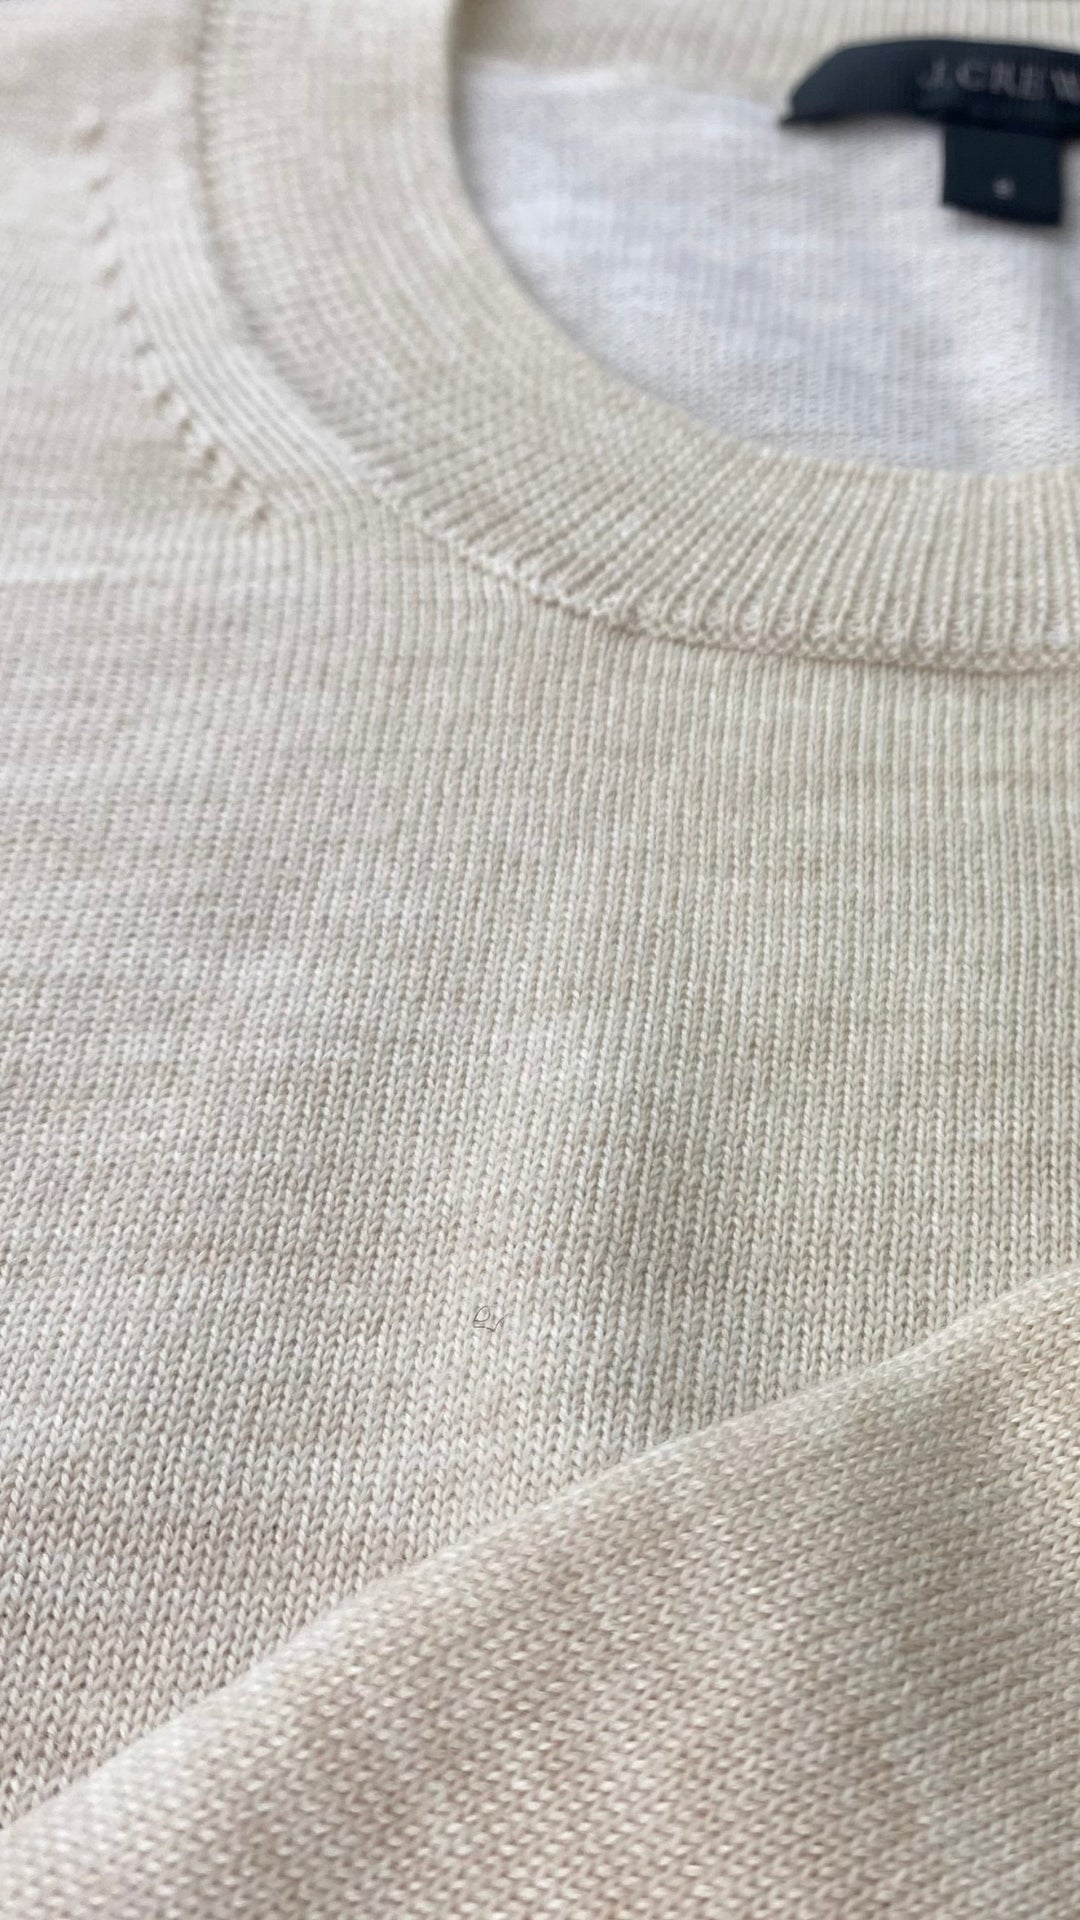 Chandail tricot avoine mélange de laine mérinos et coton, marque J.Crew, taille small. Vue de l'encolure.